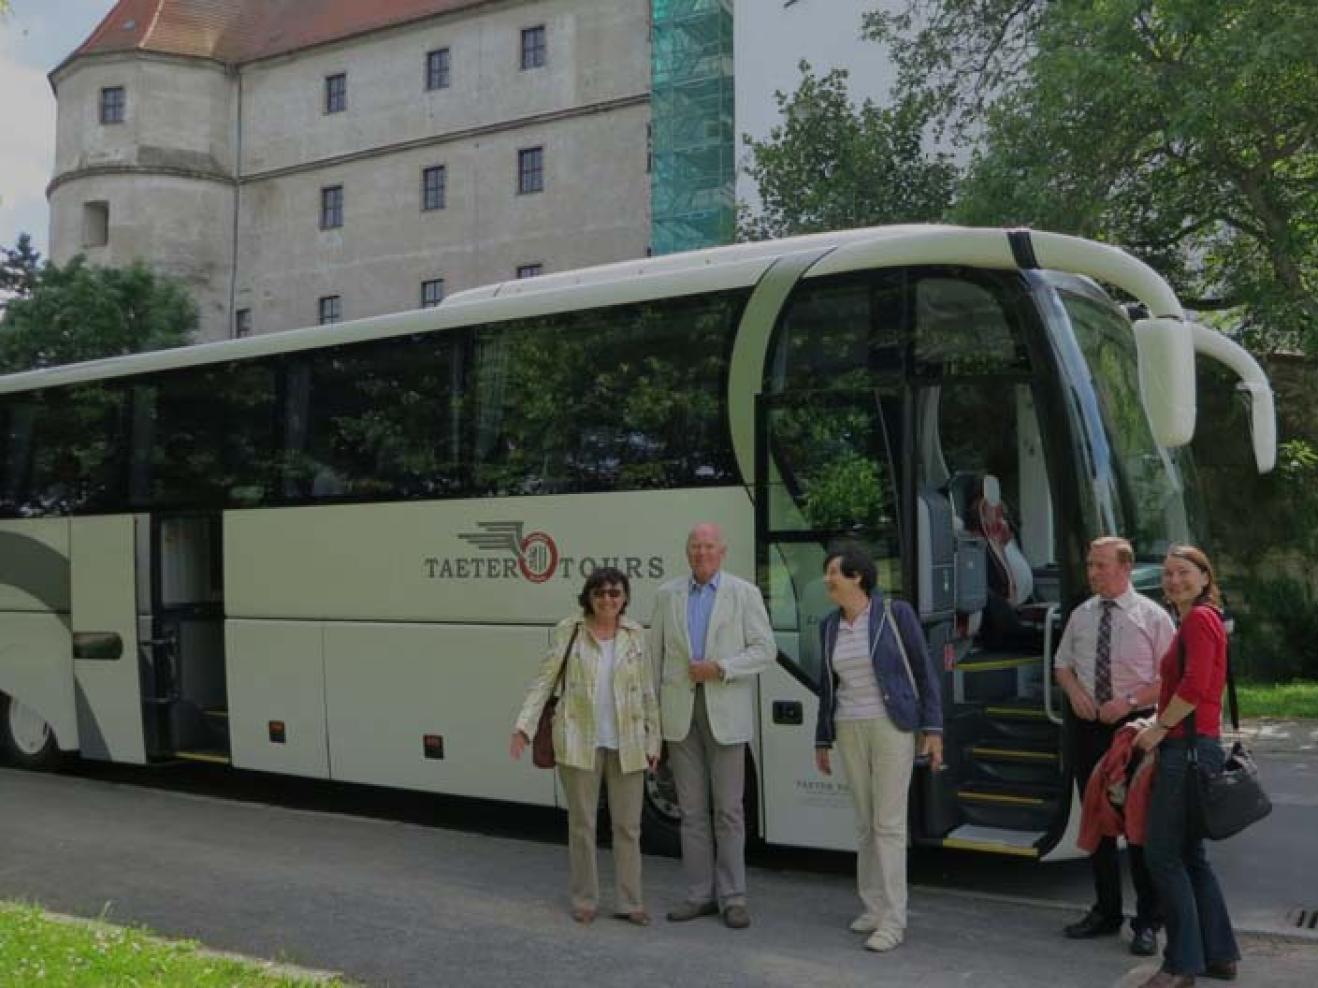 Mitglieder des Freundeskreises vor dem Reisebus von Taeter Tours